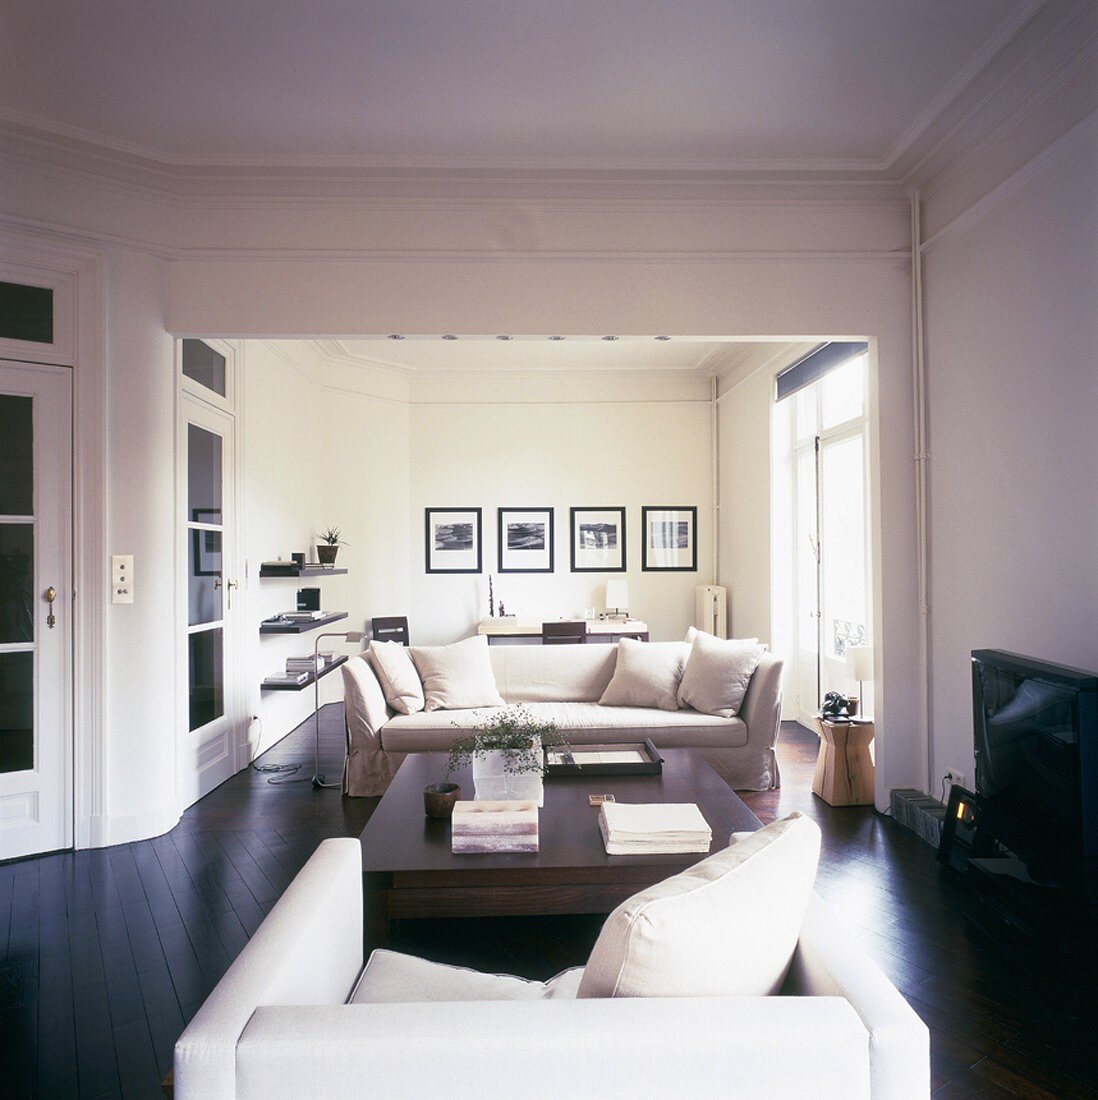 Blick in den stilvoll eingerichteten Wohnraum mit dunklem Parkettboden und Zierleisten an der Decke